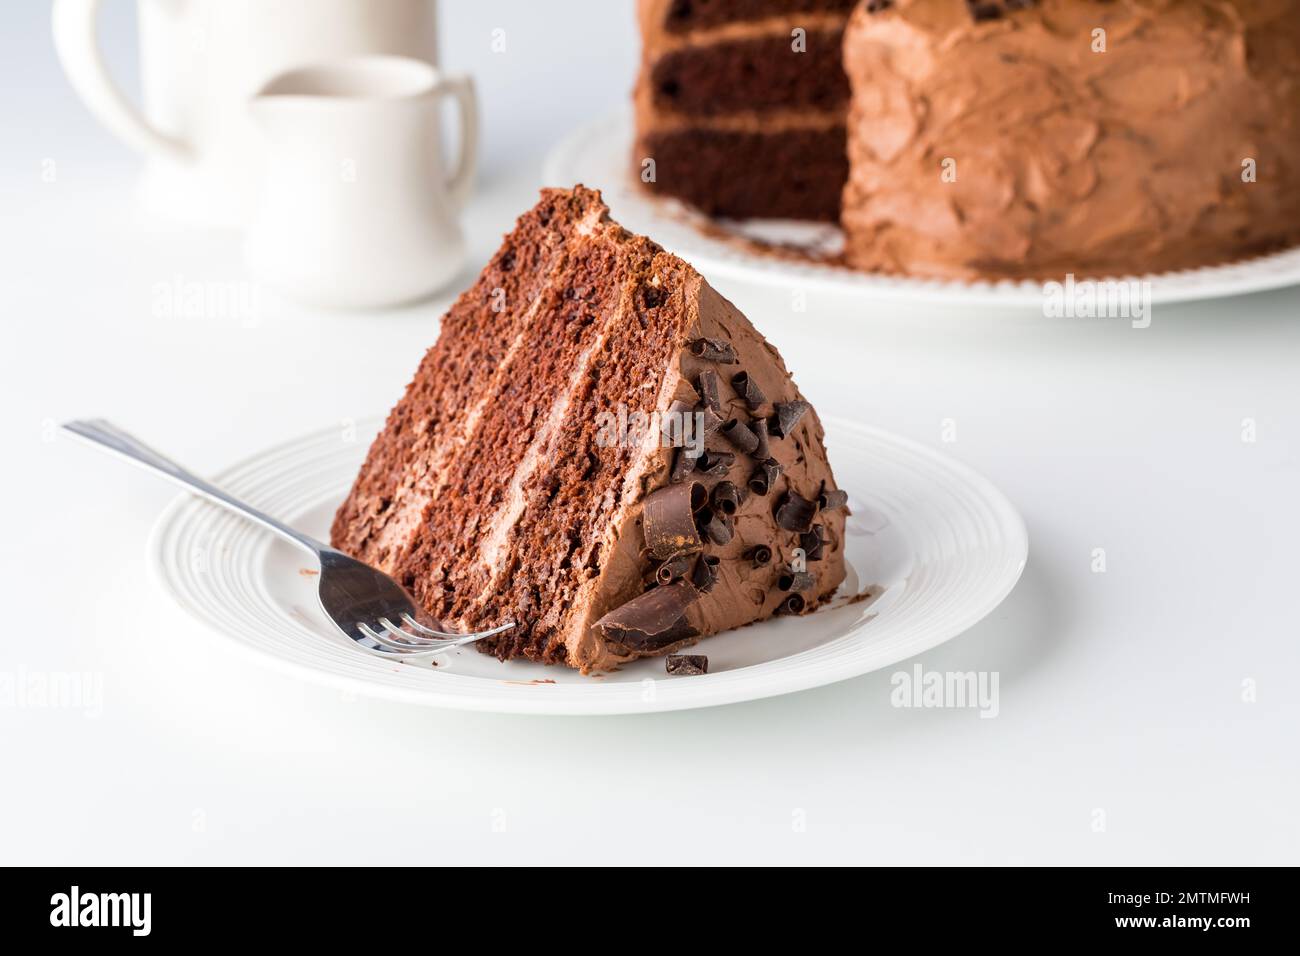 Una gran rebanada de pastel de chocolate decadente de tres capas, listo  para comer Fotografía de stock - Alamy